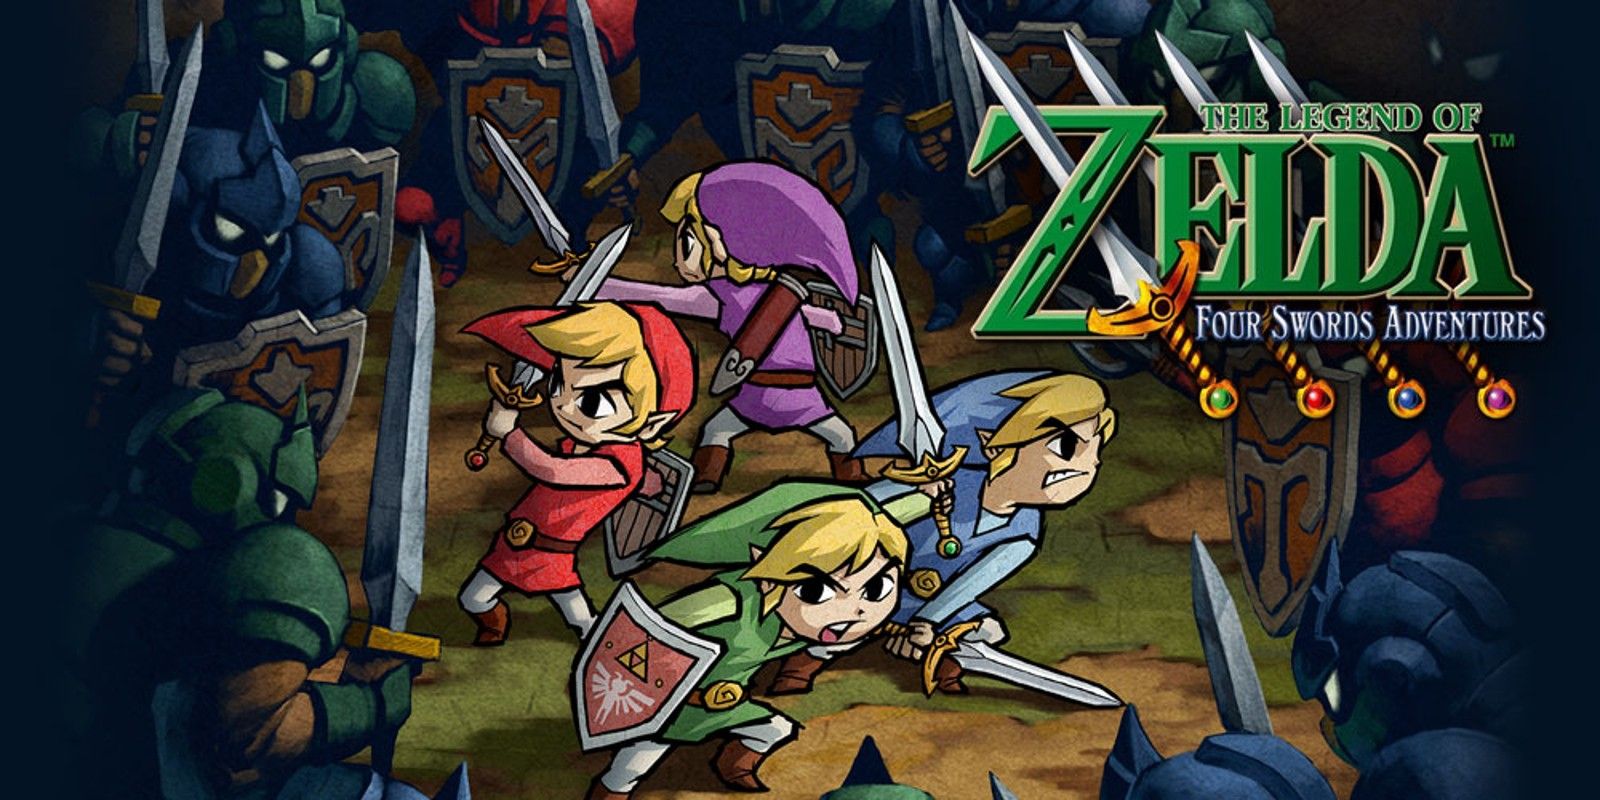 Arte principal, incluindo o logotipo de Four Swords Adventures, mostrando os quatro Links cercados por inimigos.